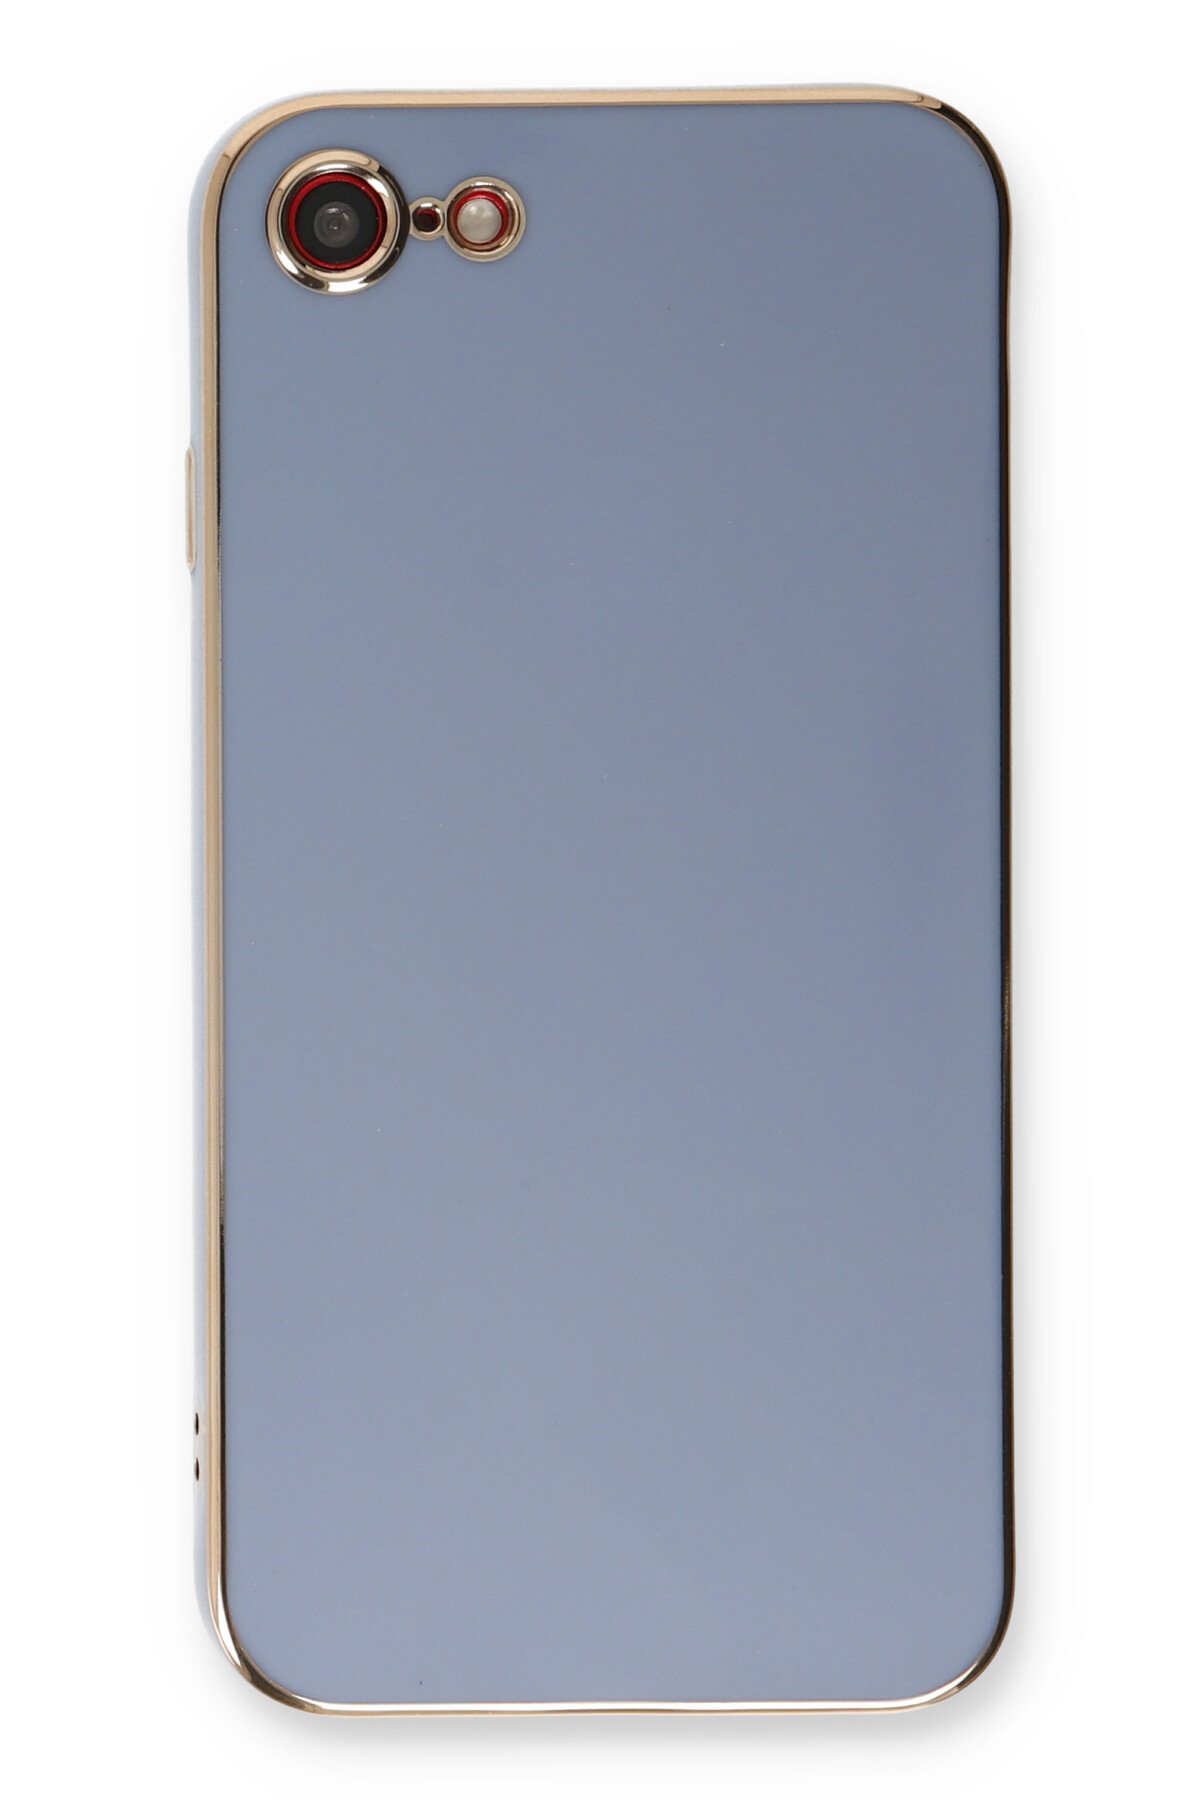 Newface iPhone 8 Kılıf Coco Deri Silikon Kapak - Gold